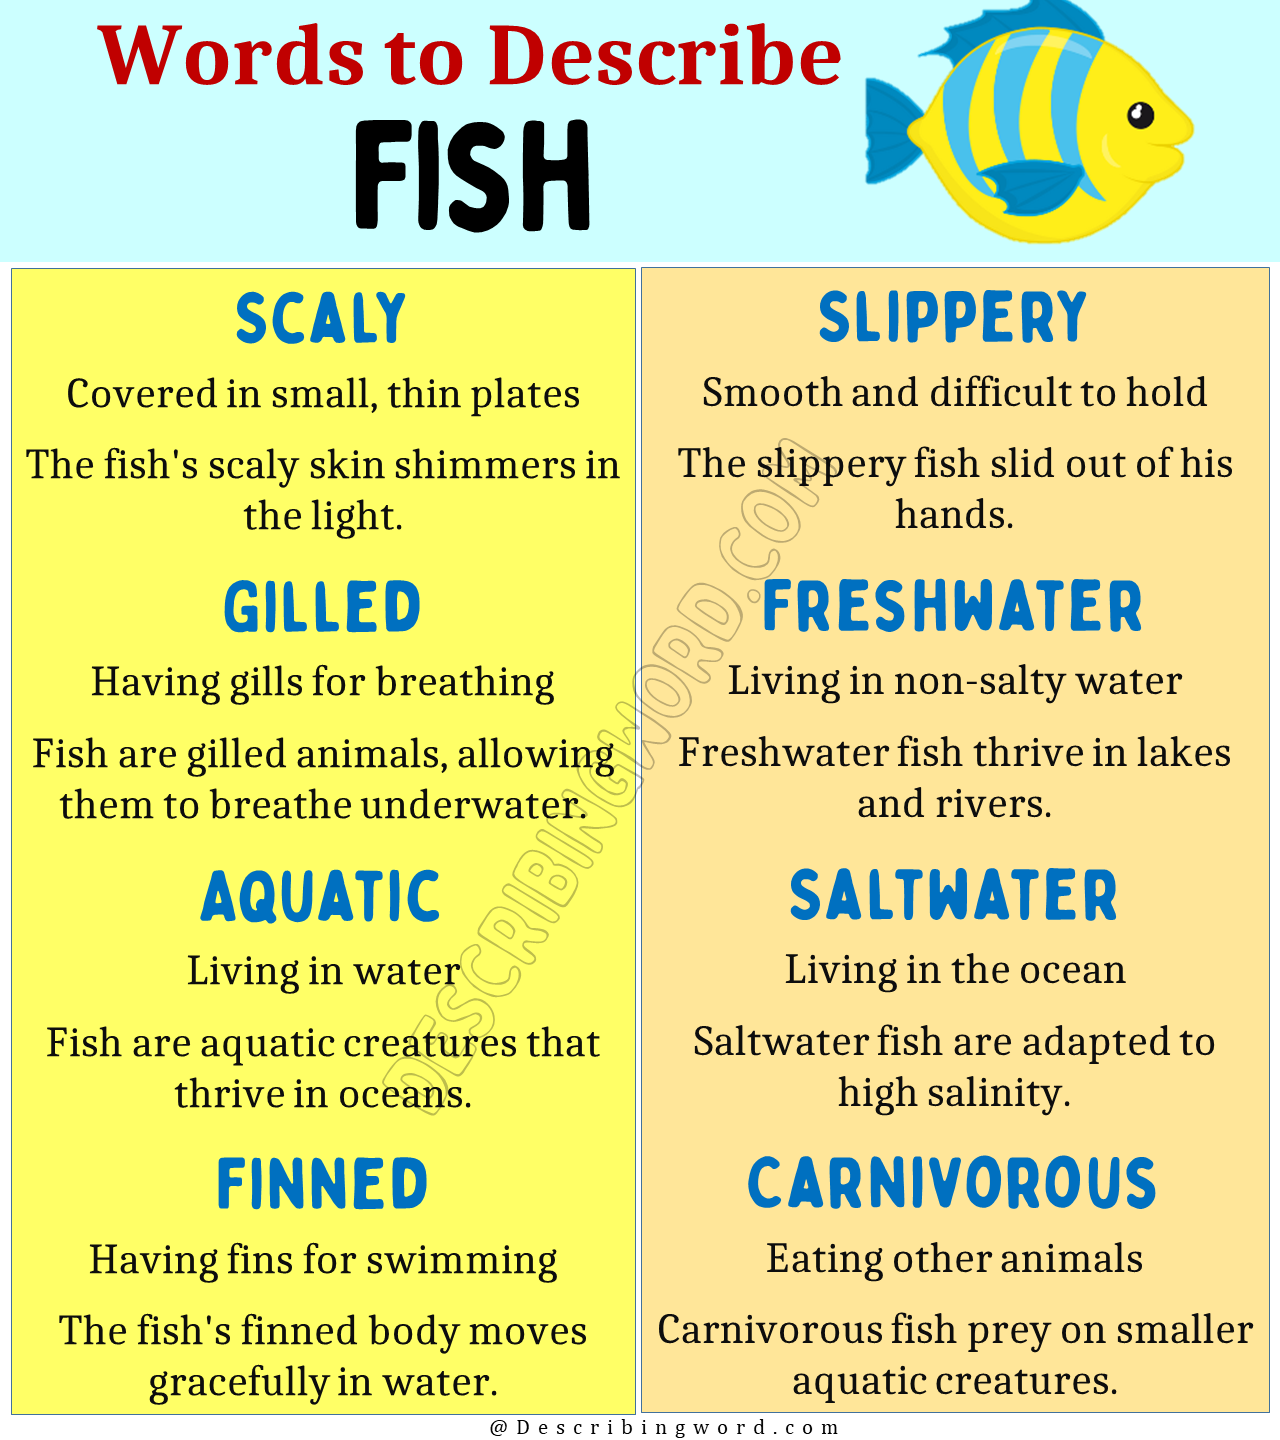 Words to Describe Fish